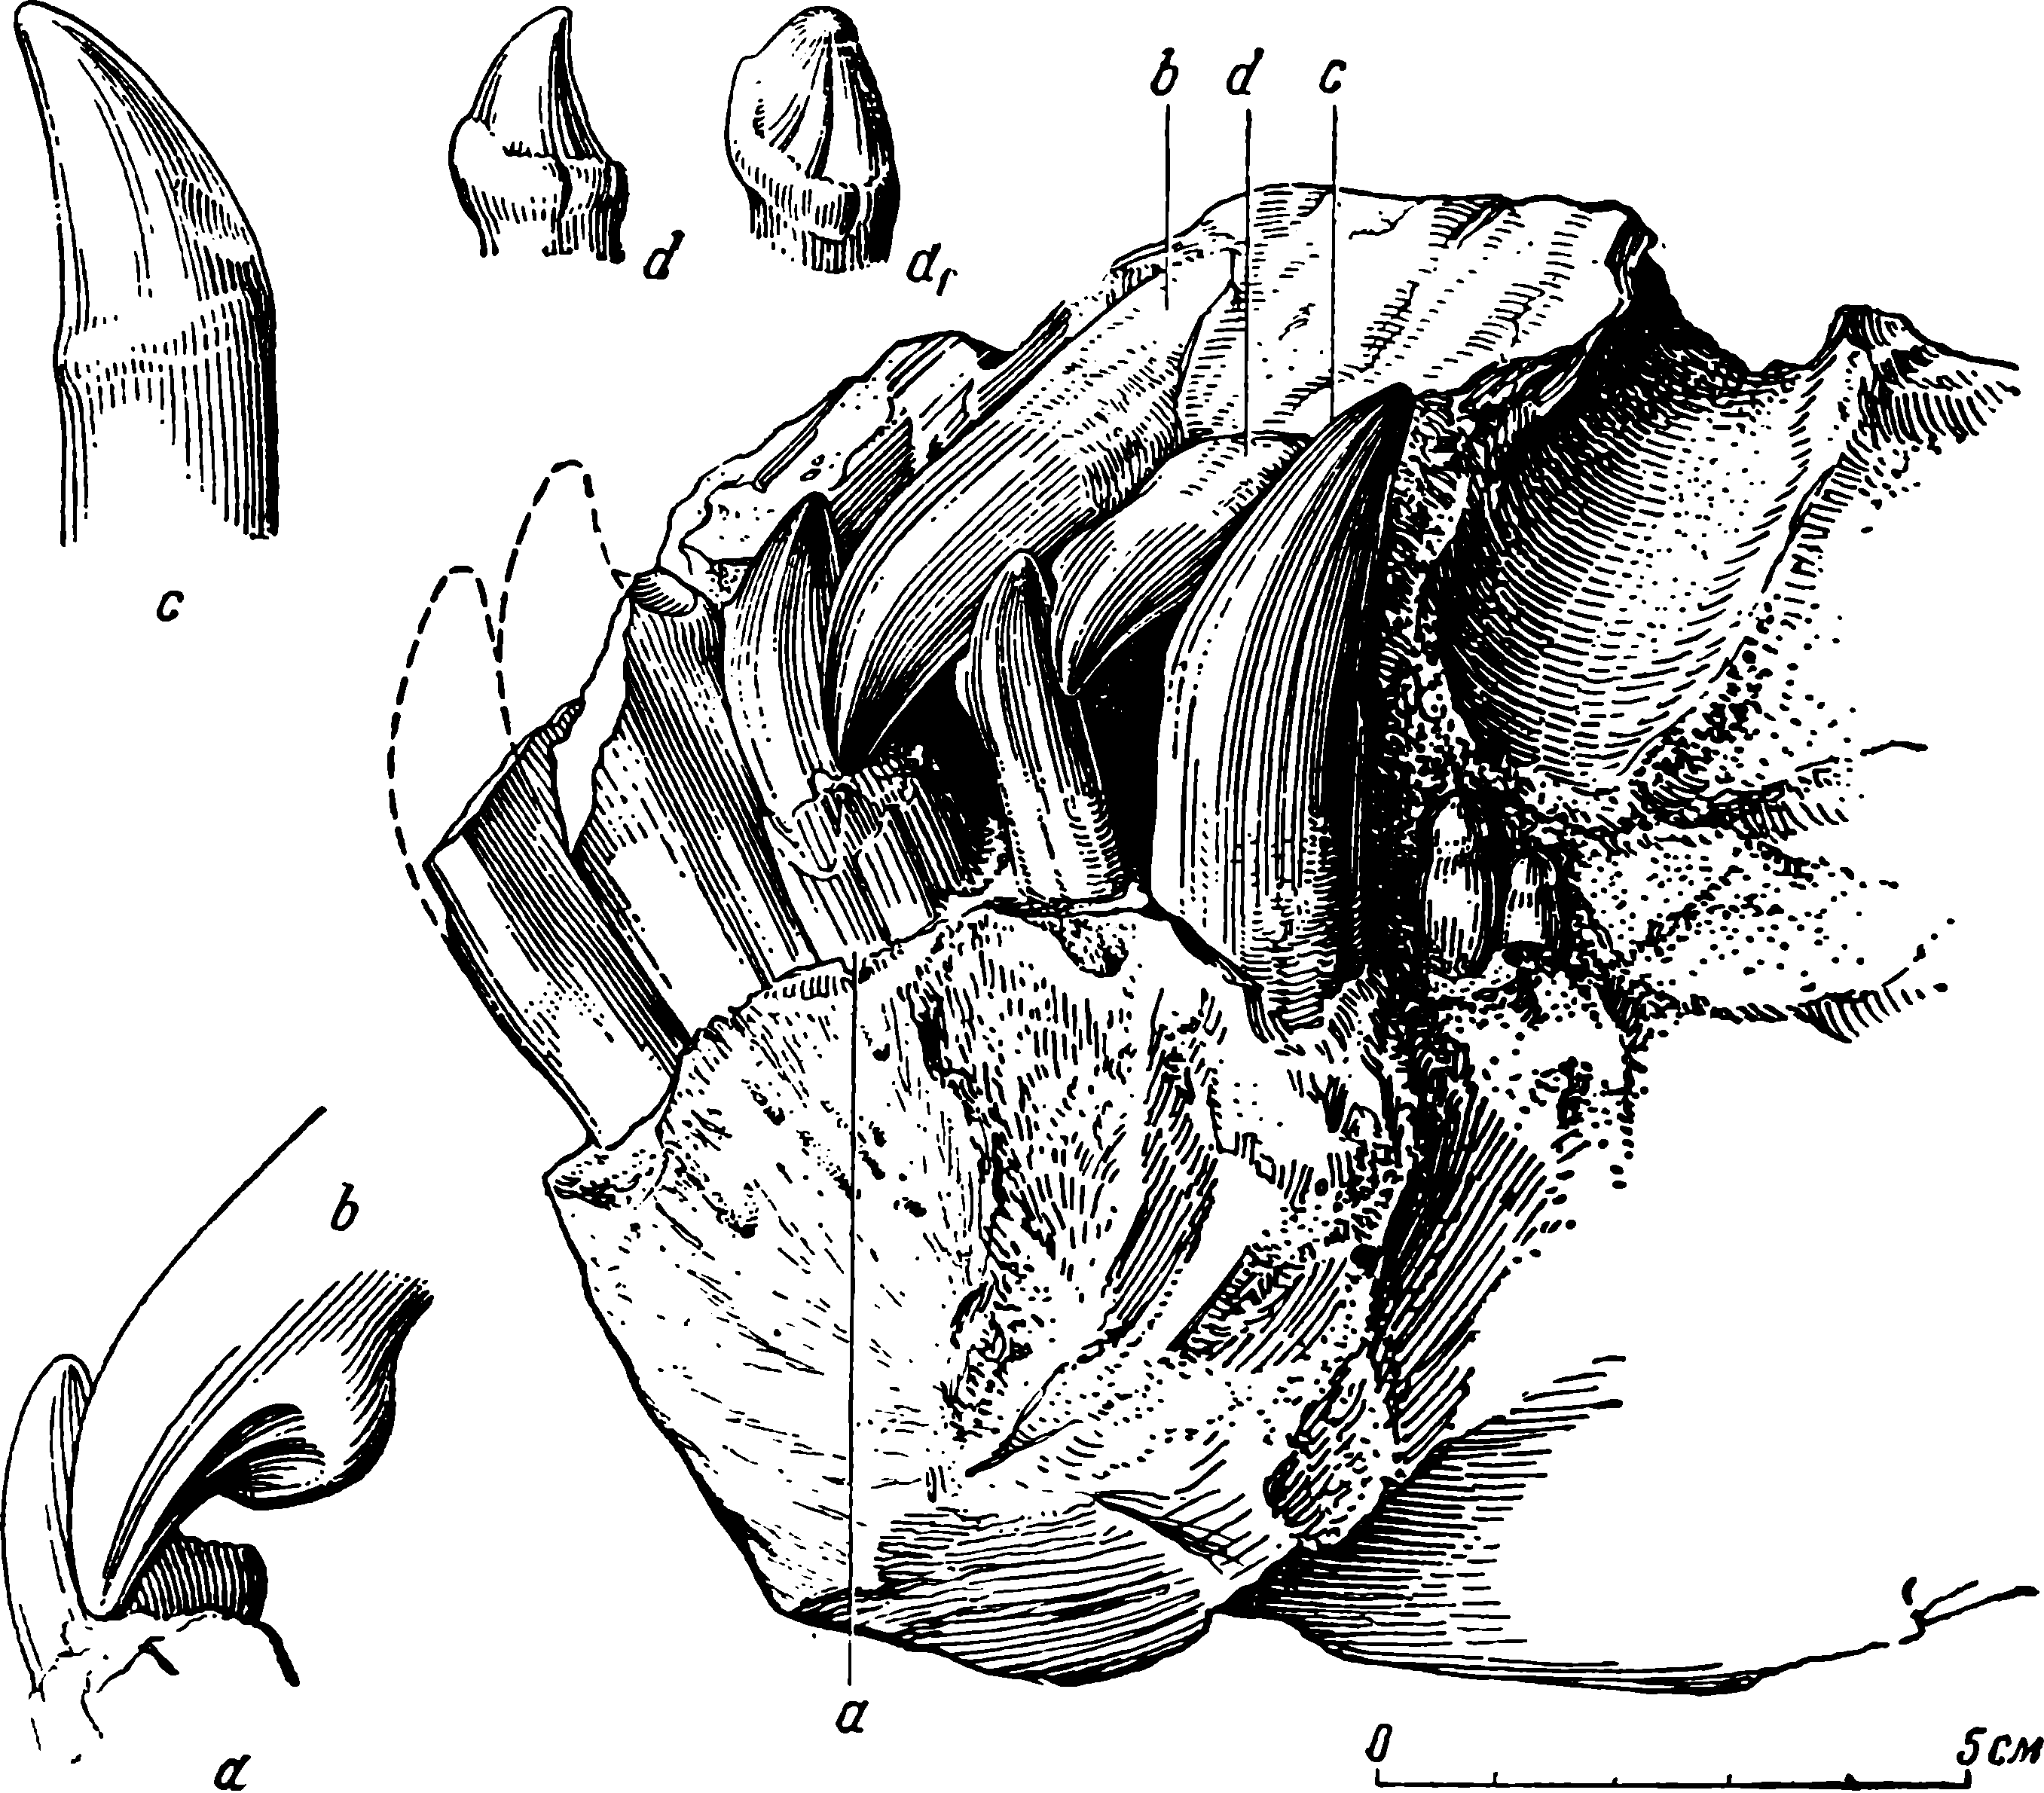 Рис. 17. Deuterosaurus biarmicus Eichw. Передний фрагмент черепа ЛГМ/ЧМП № 1 с симфизной частью нижней челюсти, после новой препаровки. Вид слева. ab — соприкосновение третьих зубов нижней и верхней челюсти; c и d, d1 — внутренние стороны четвертого нижнечелюстного клыка и верхнечелюстного зуба